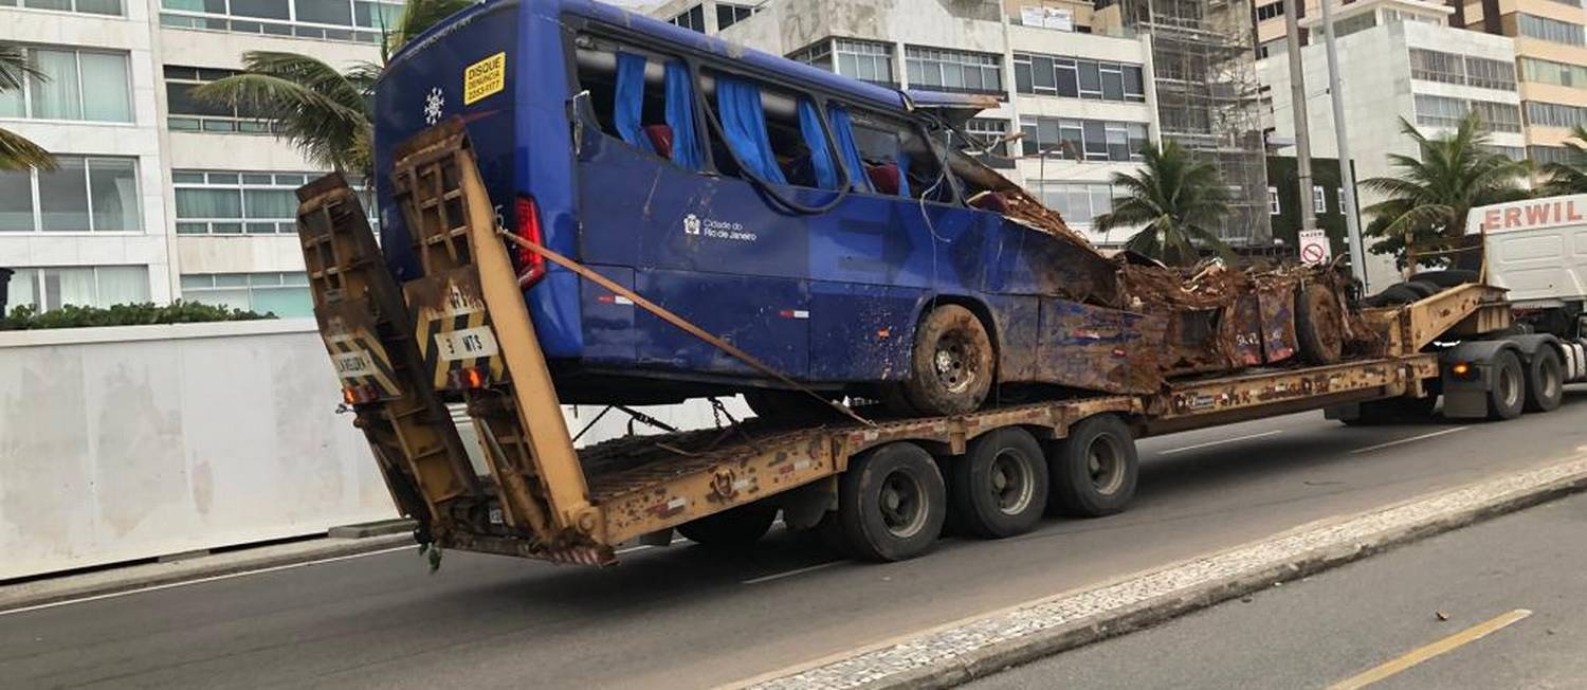 Metade do ônibus foi destruído, em deslizamento que deixou dois mortos Foto: Foto de leitor